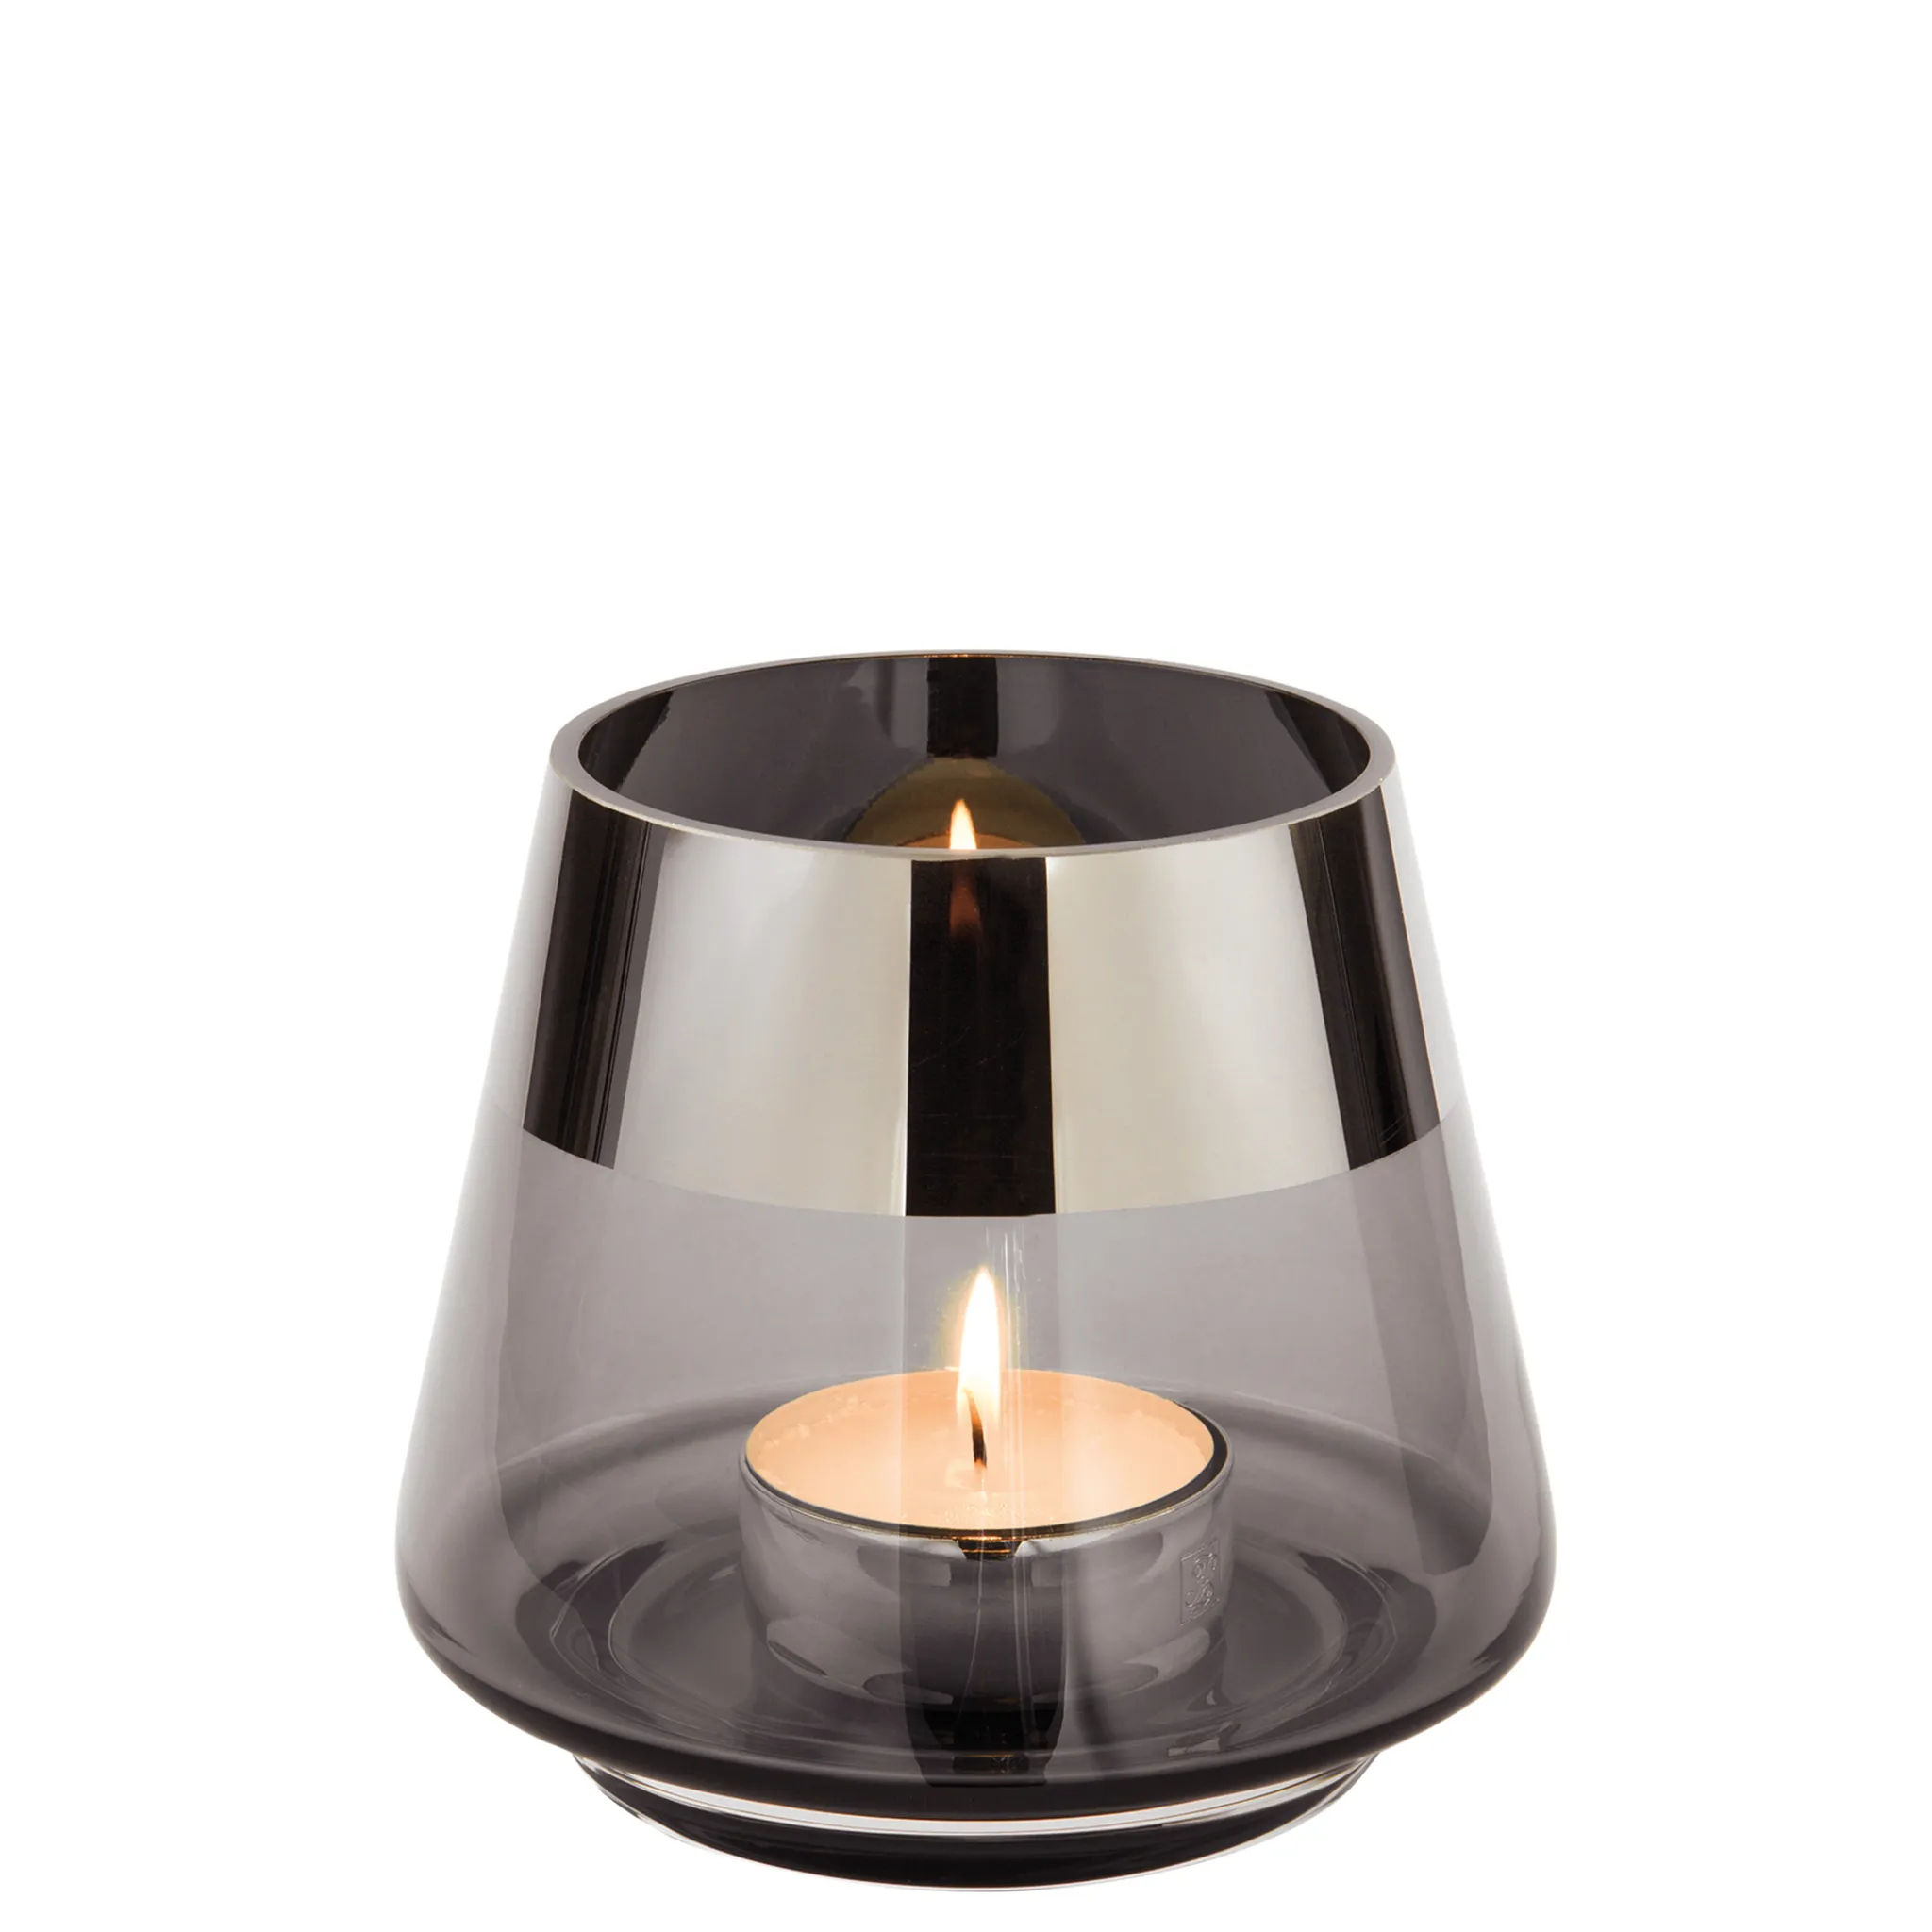 Fink Teelichthalter Jona grau Glas Höhe 9 cm | Kerzenständer